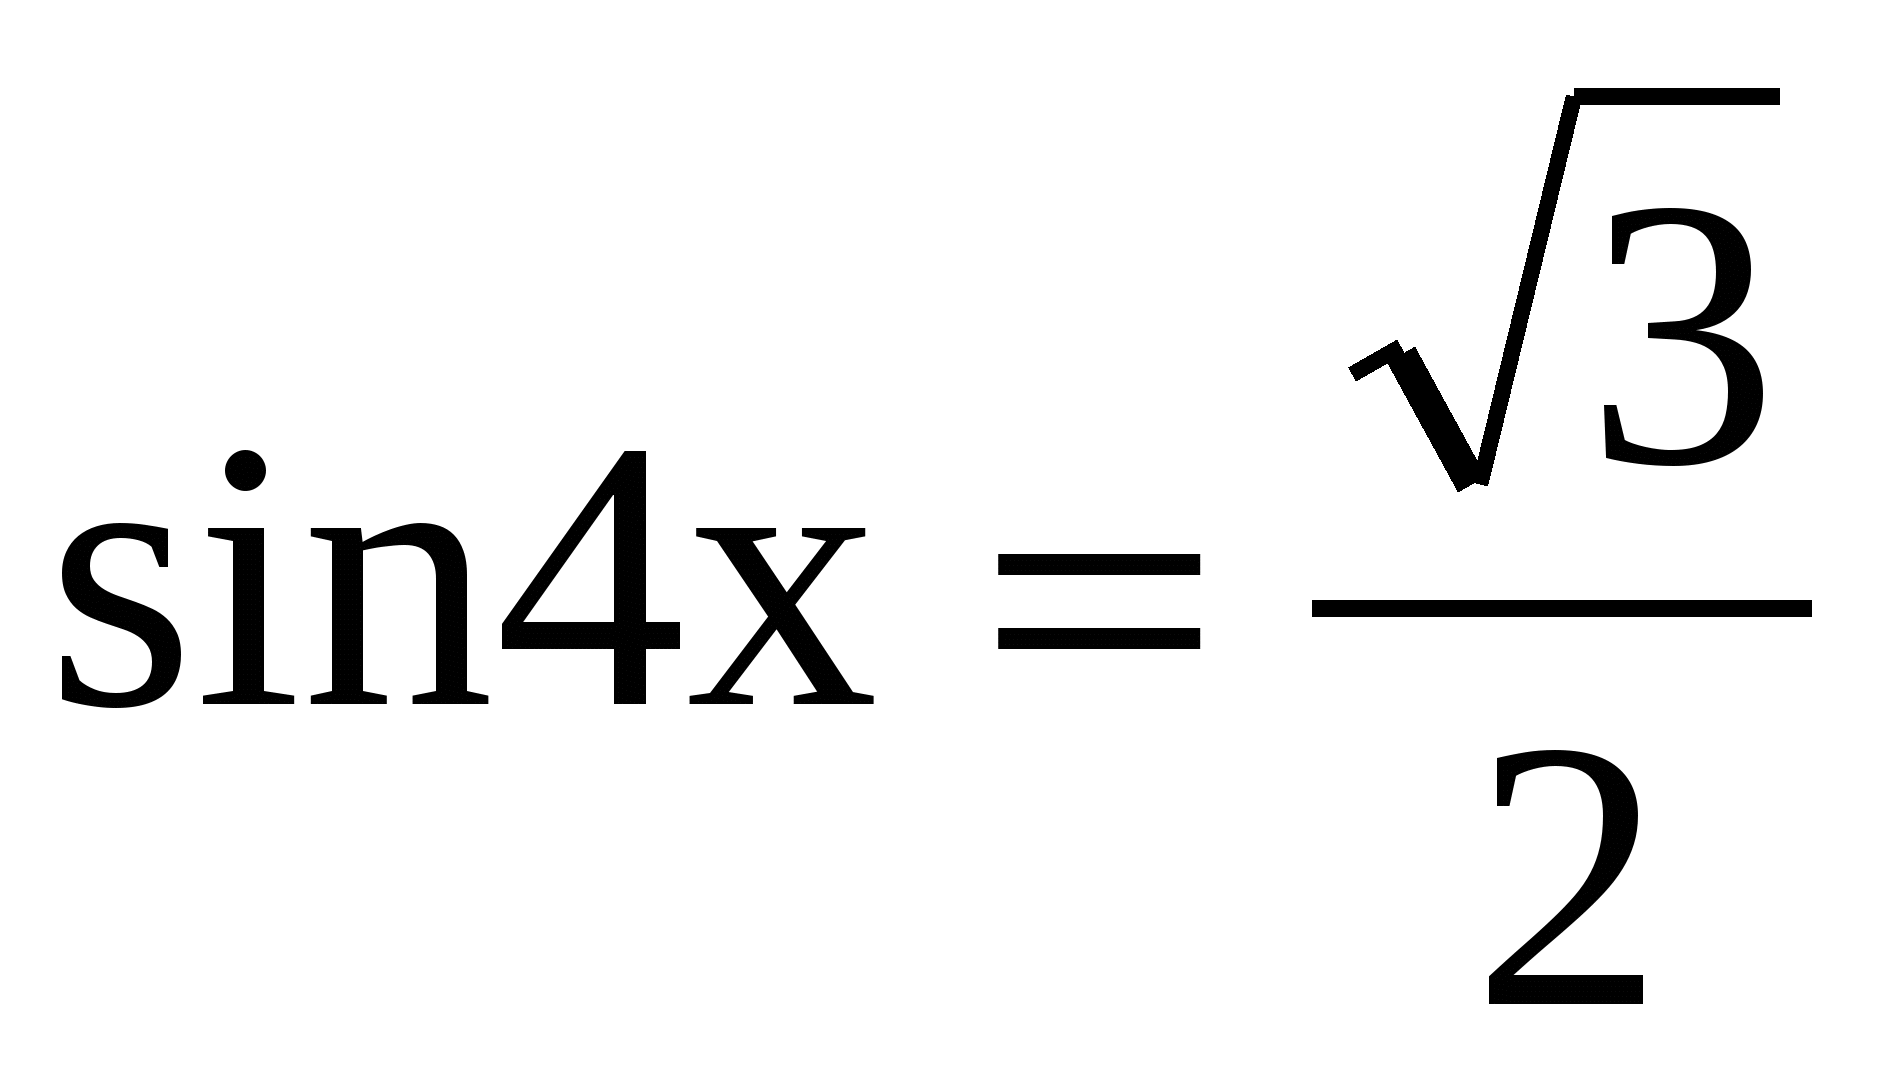 Решение простейших тригонометрических уравнений